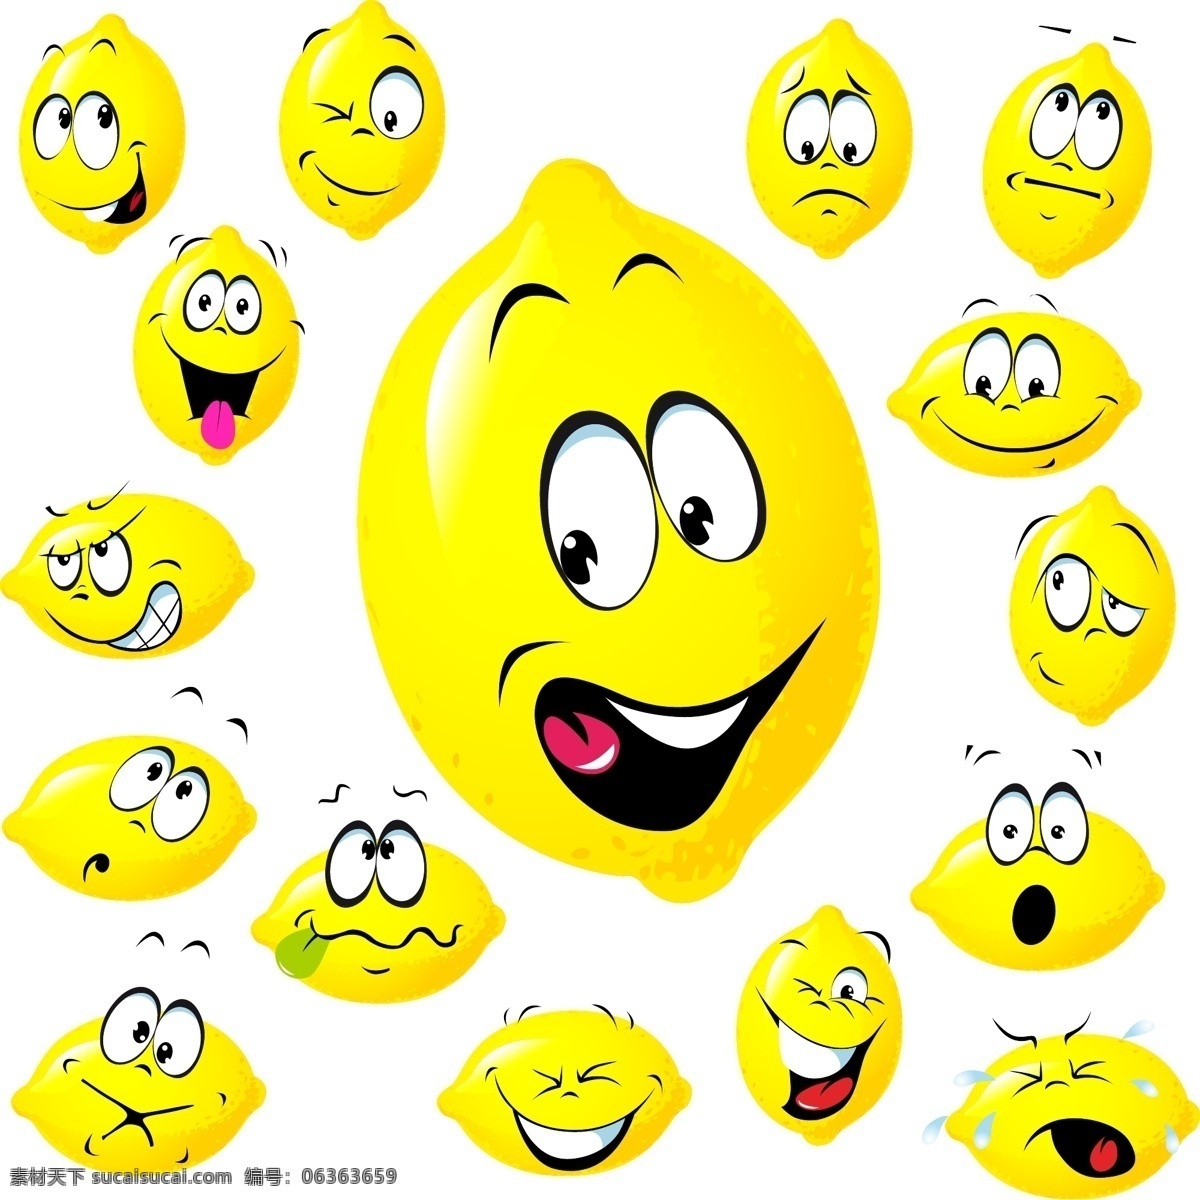 表情 卡通 卡通设计 可爱 手绘 水果 笑脸 幽默 矢量 模板下载 卡通水果表情 有趣 滑稽 蔬菜水果 矢量图 日常生活